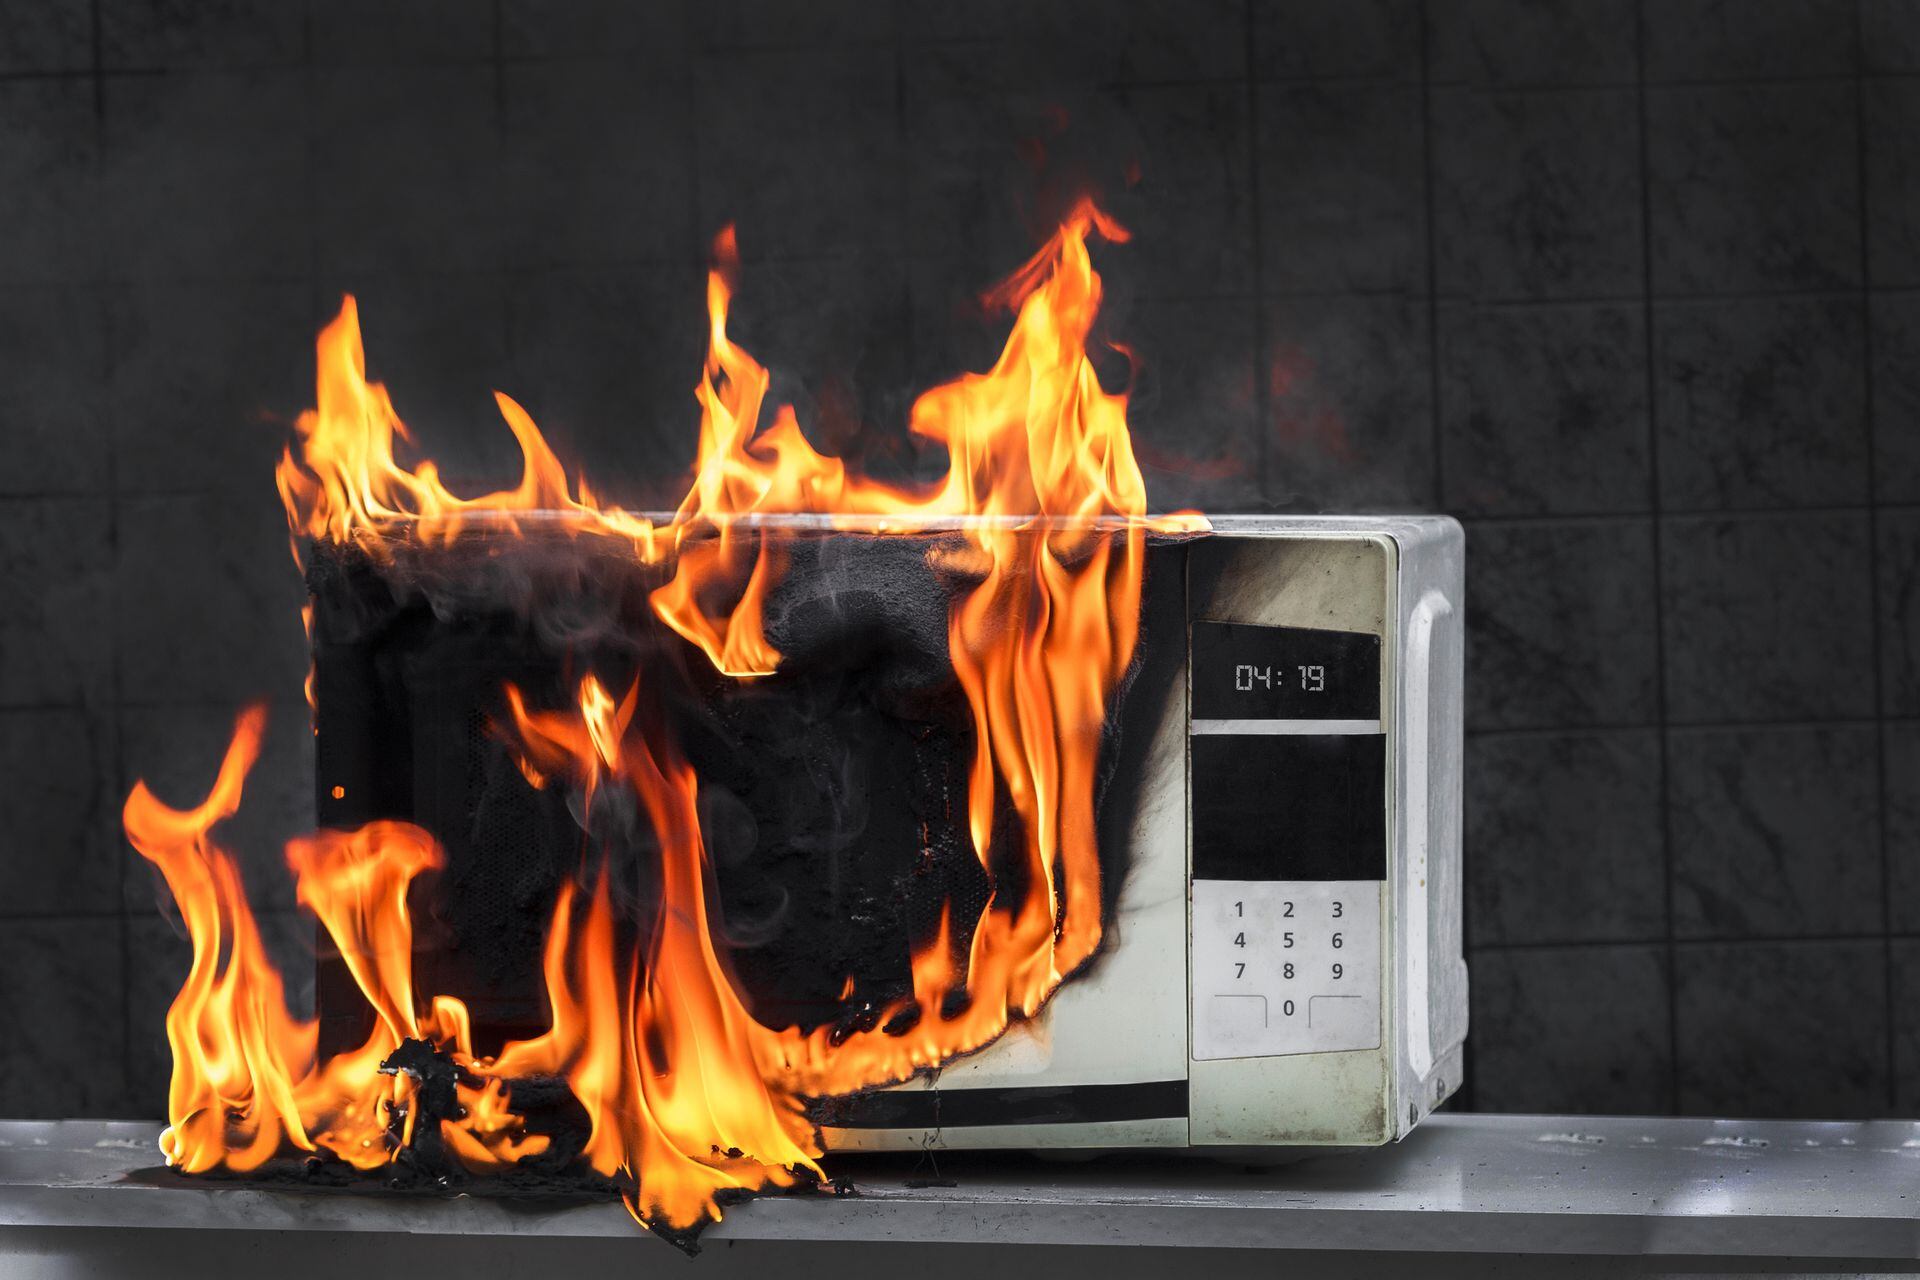 L'uso improprio del forno a microonde può comportare rischi per la sicurezza